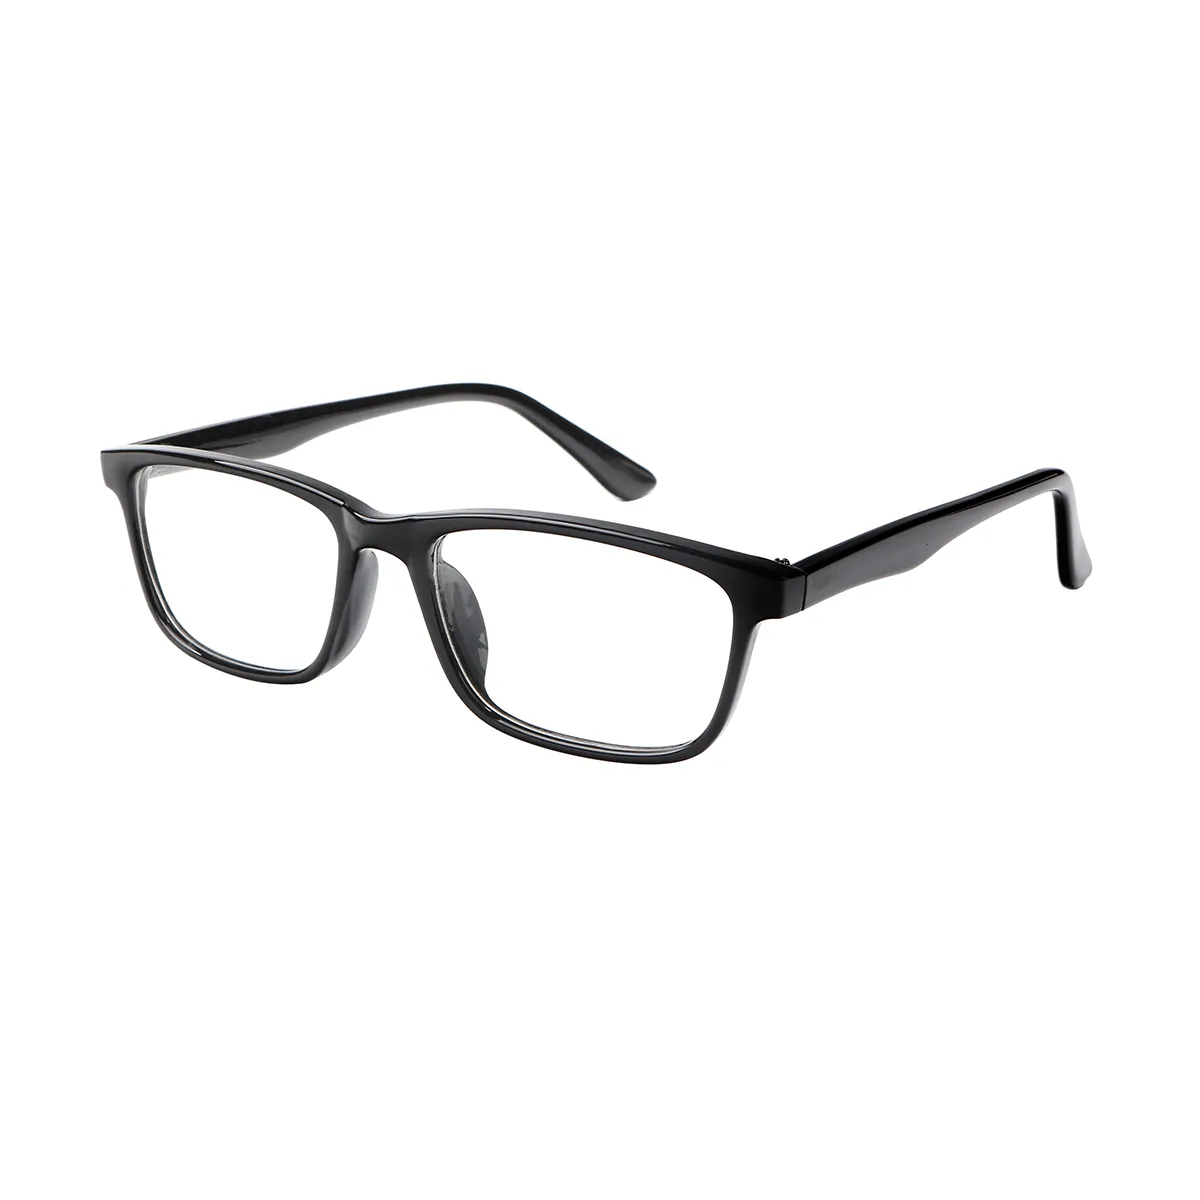 Aggy - Rectangle Black Glasses for Men & Women